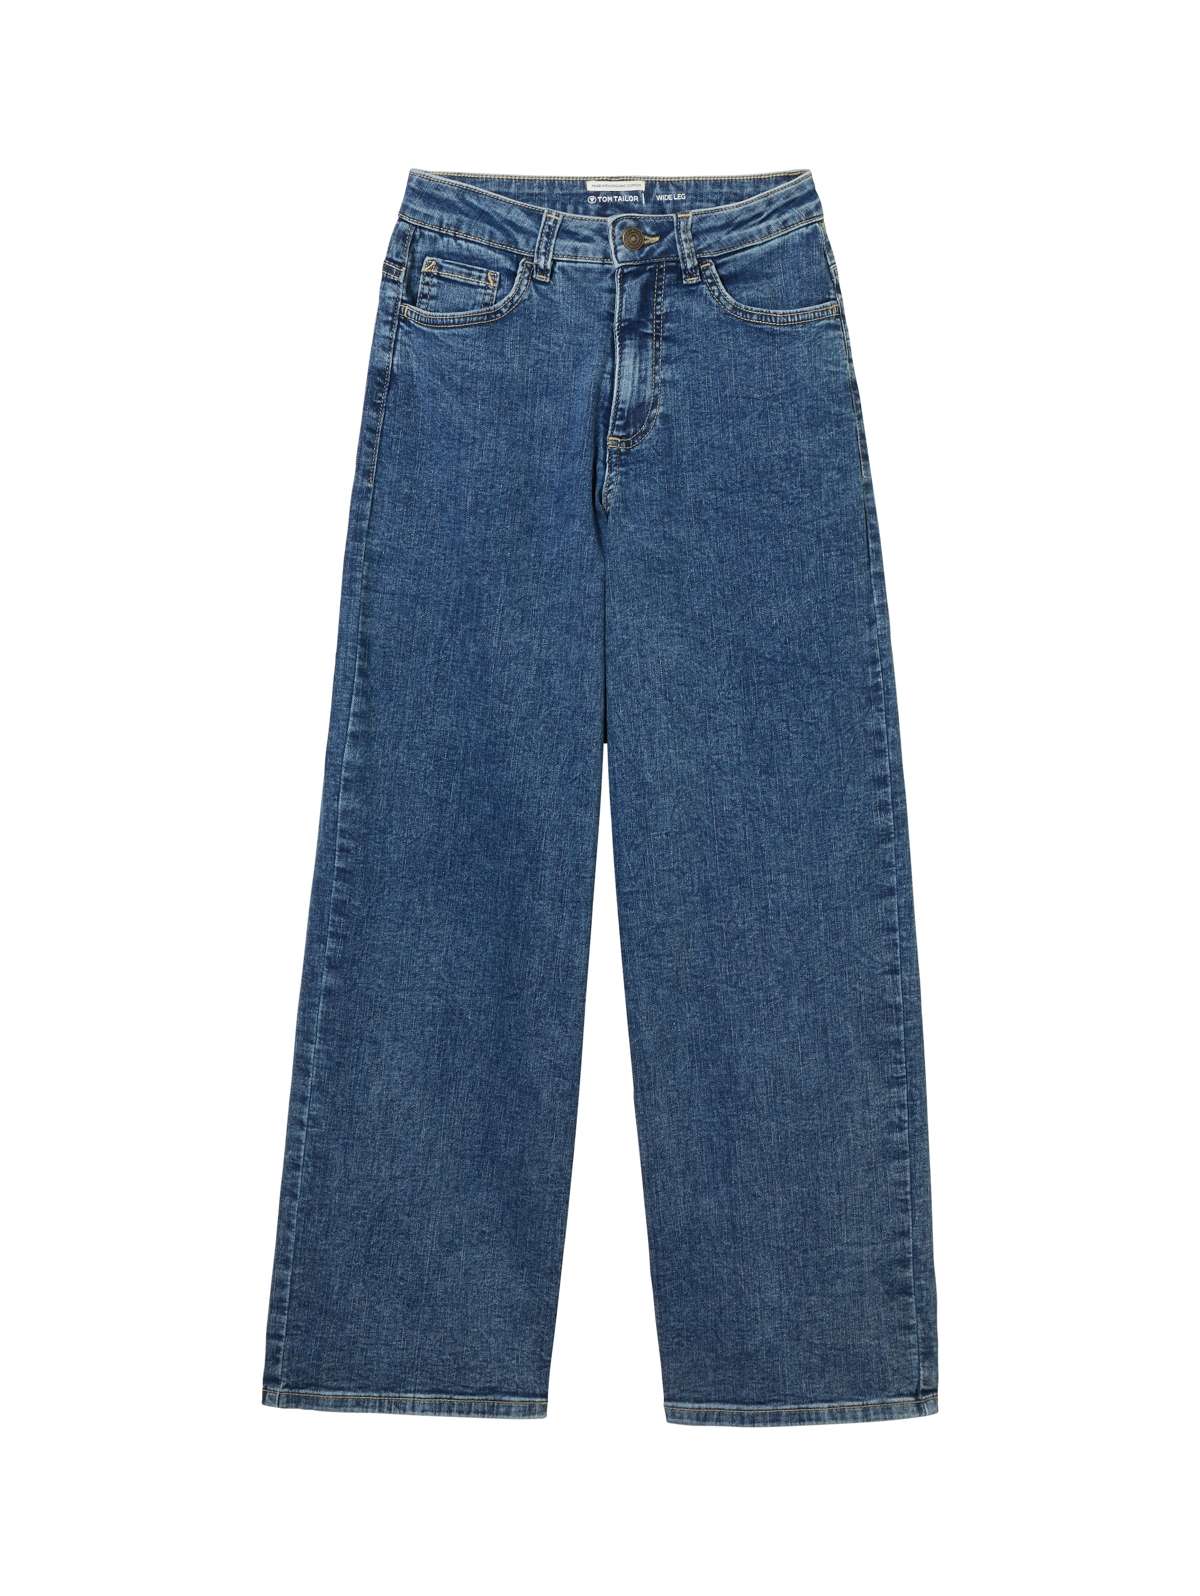 Широкие джинсы классического фасона с пятью карманами.